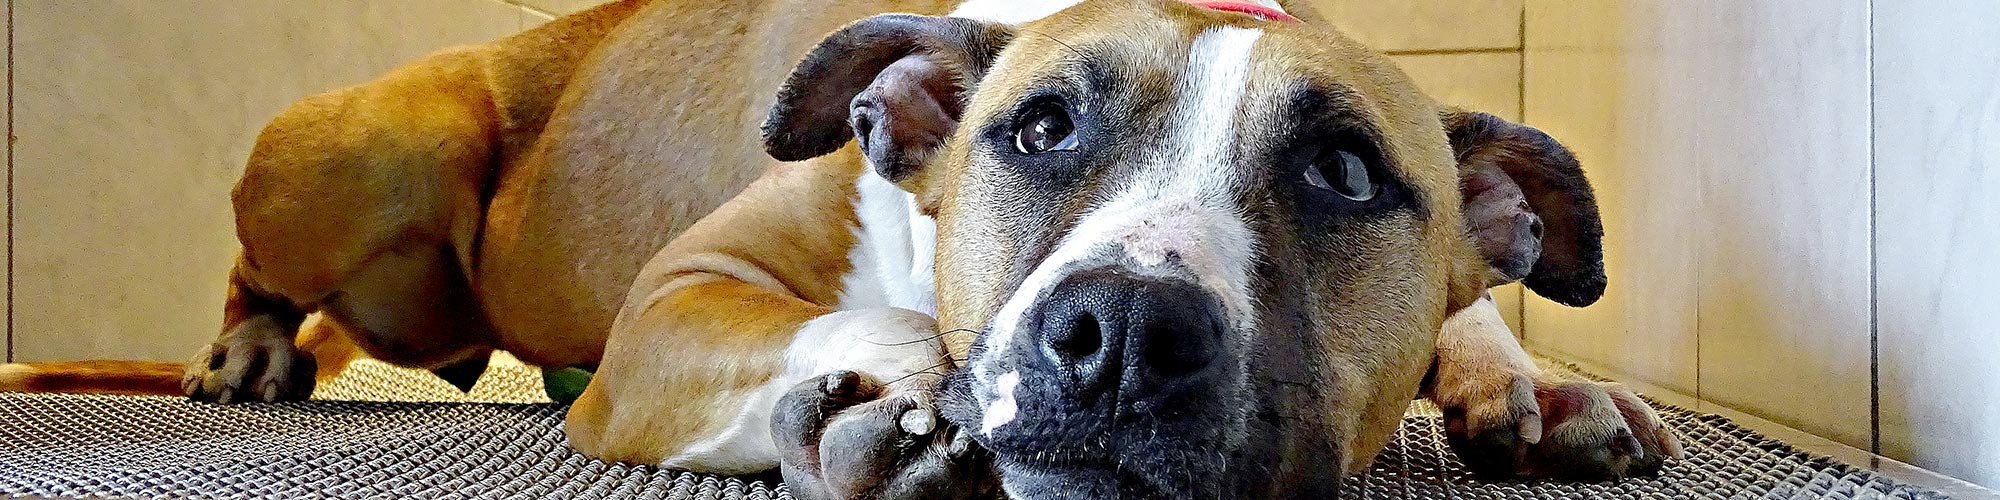 La clinique vétérinaire des Tilleroyes soigne les chiens